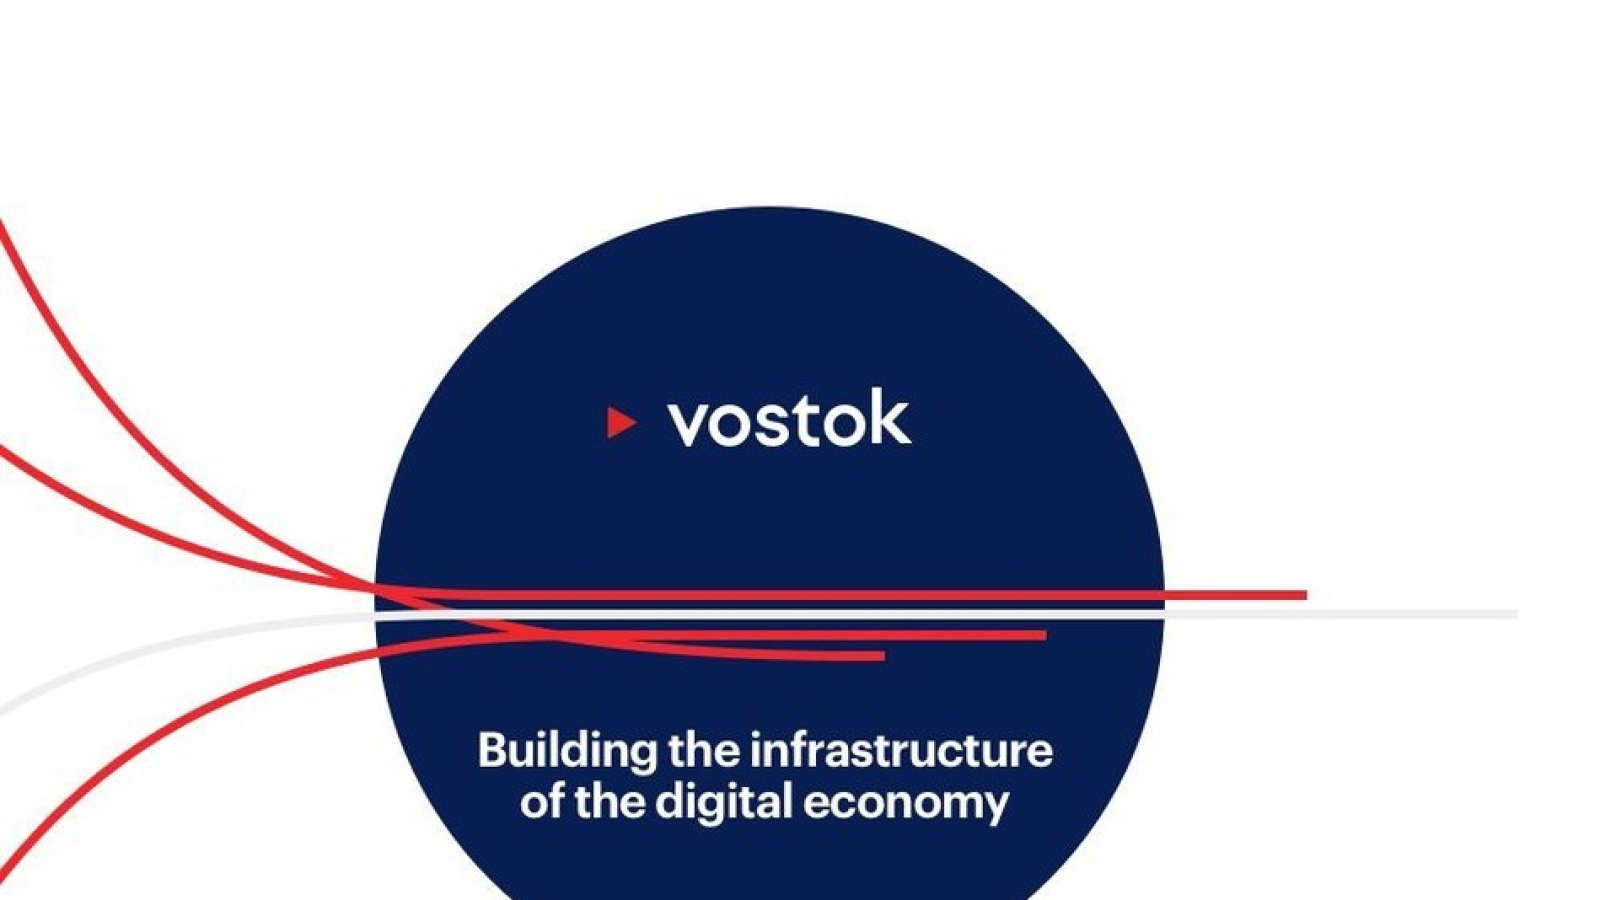 The Vostok